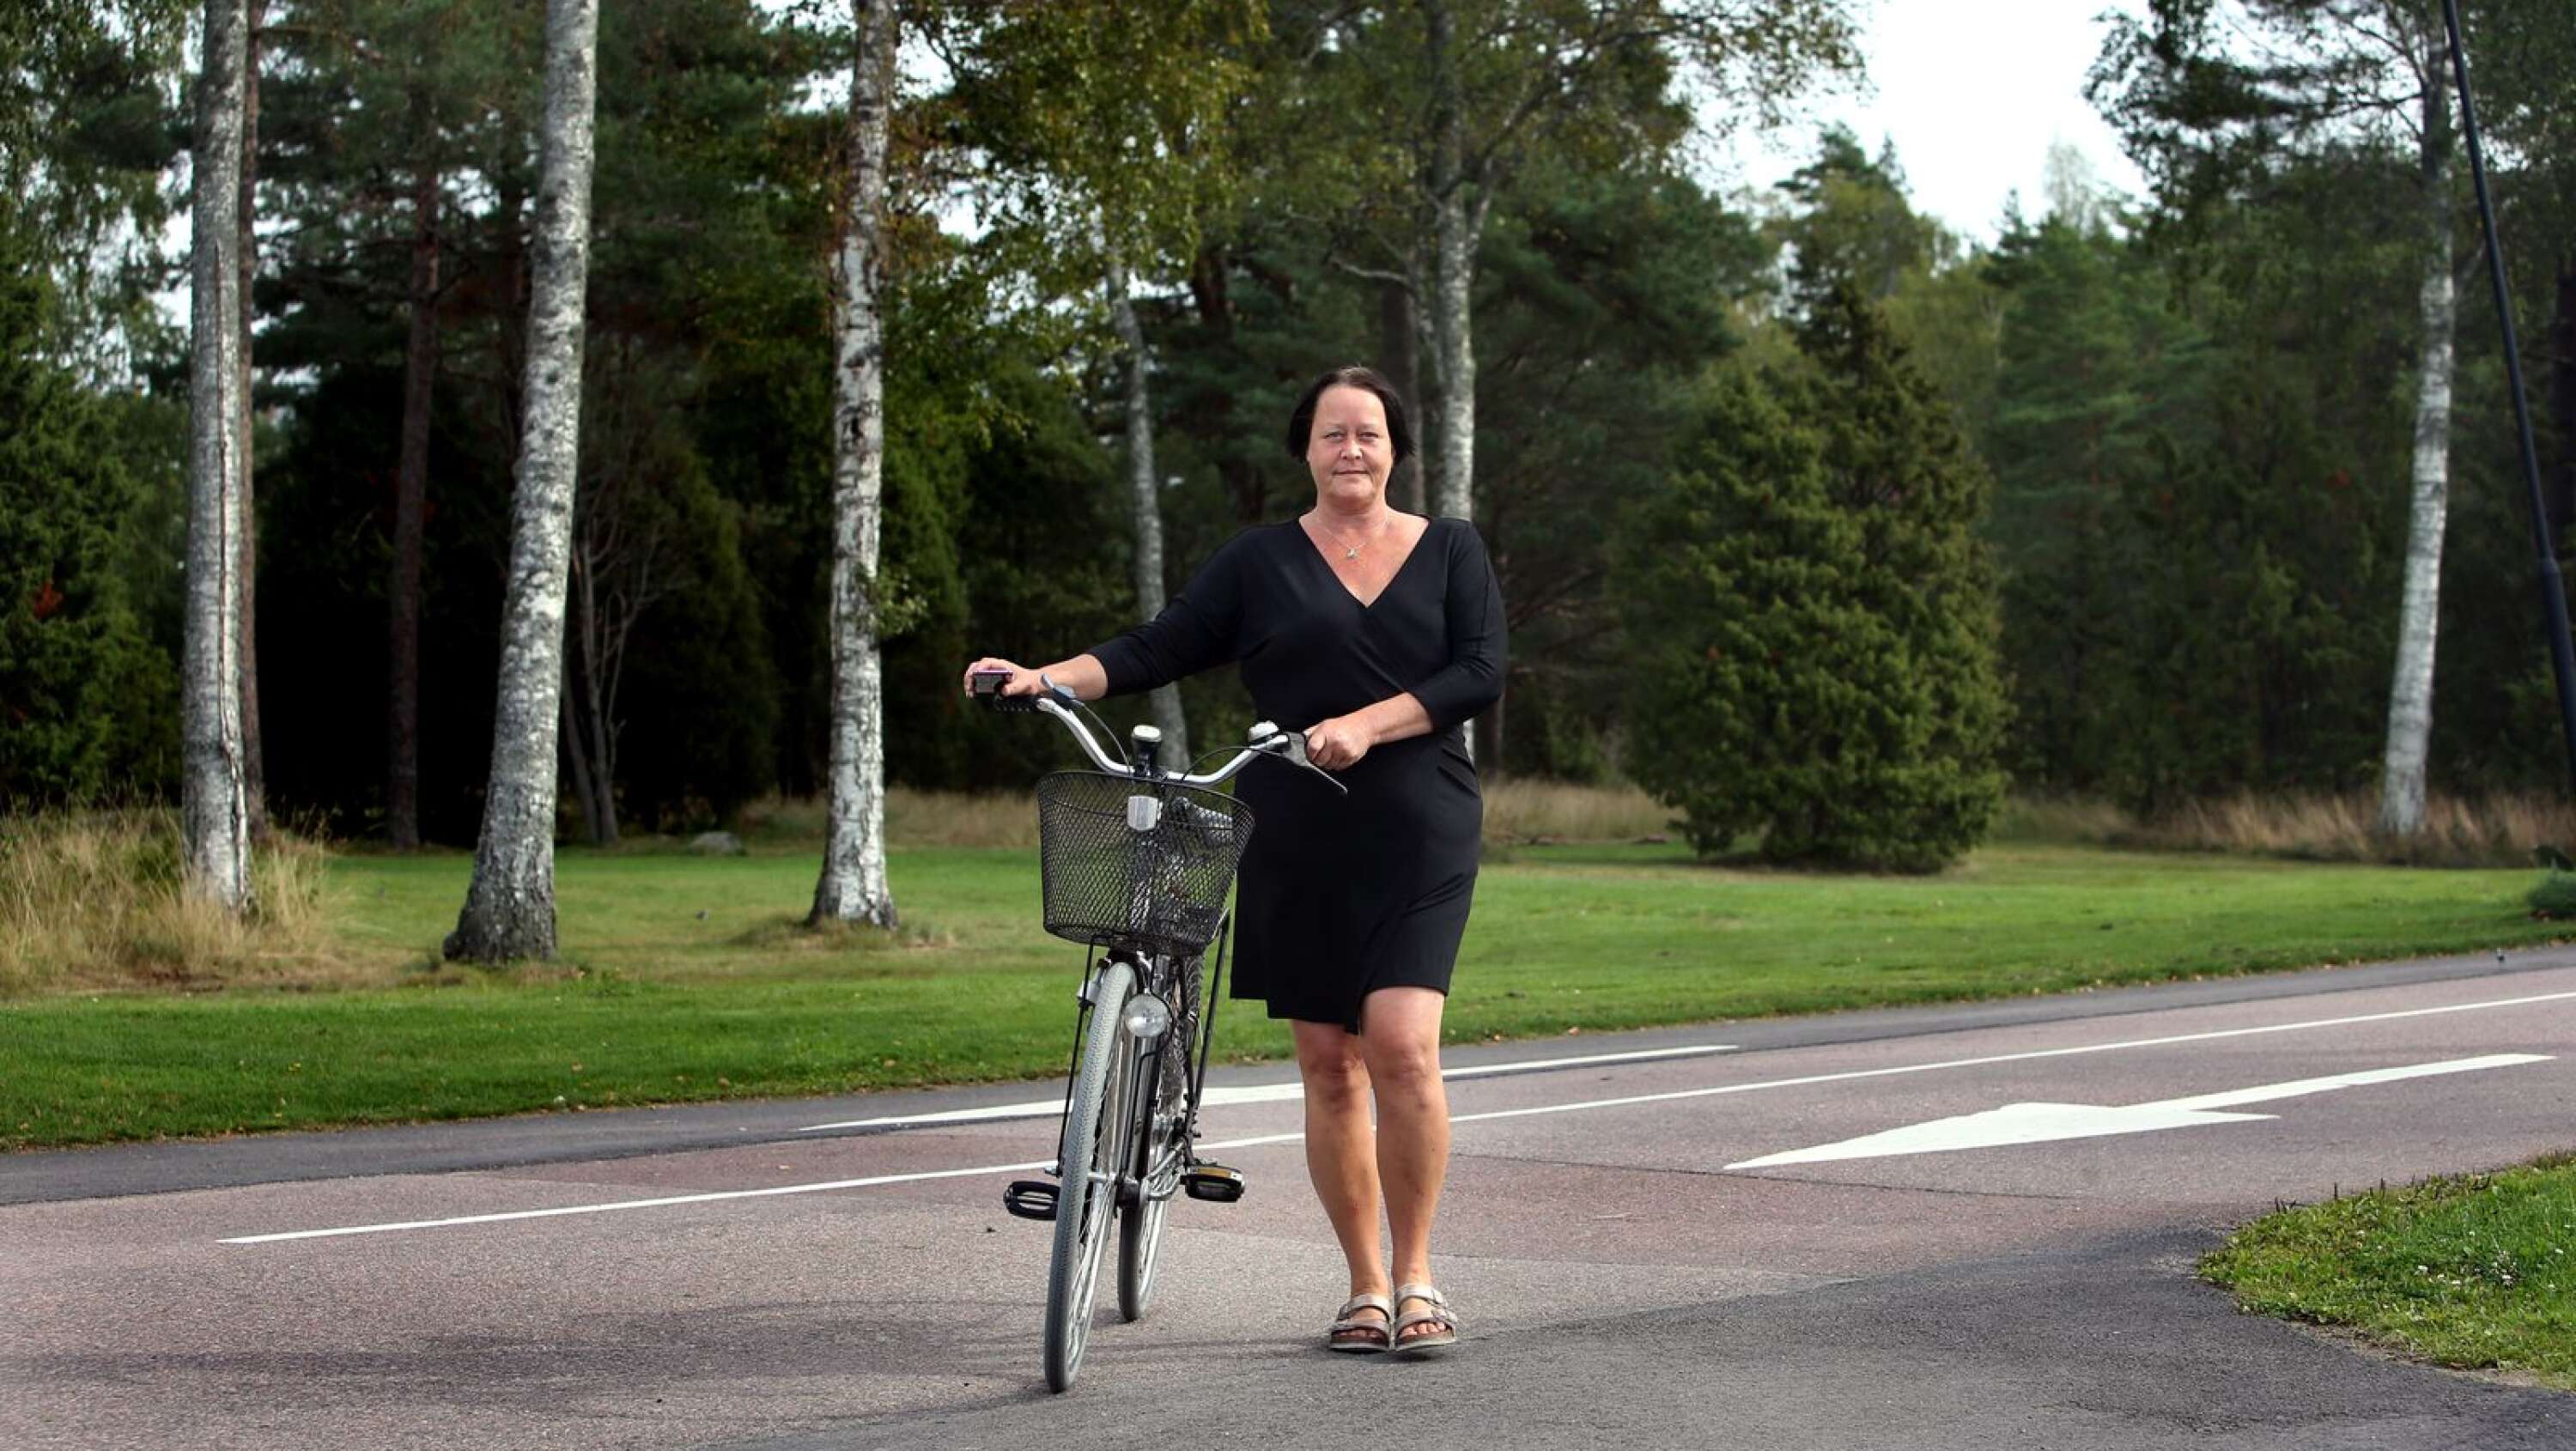 Nannethe Nabben jobbar heltid med att köra stadsbuss i Karlstad. Nästan all ledig tid lägger hon på volontärarbete för att hjälpa ensamkommande flyktingbarn.